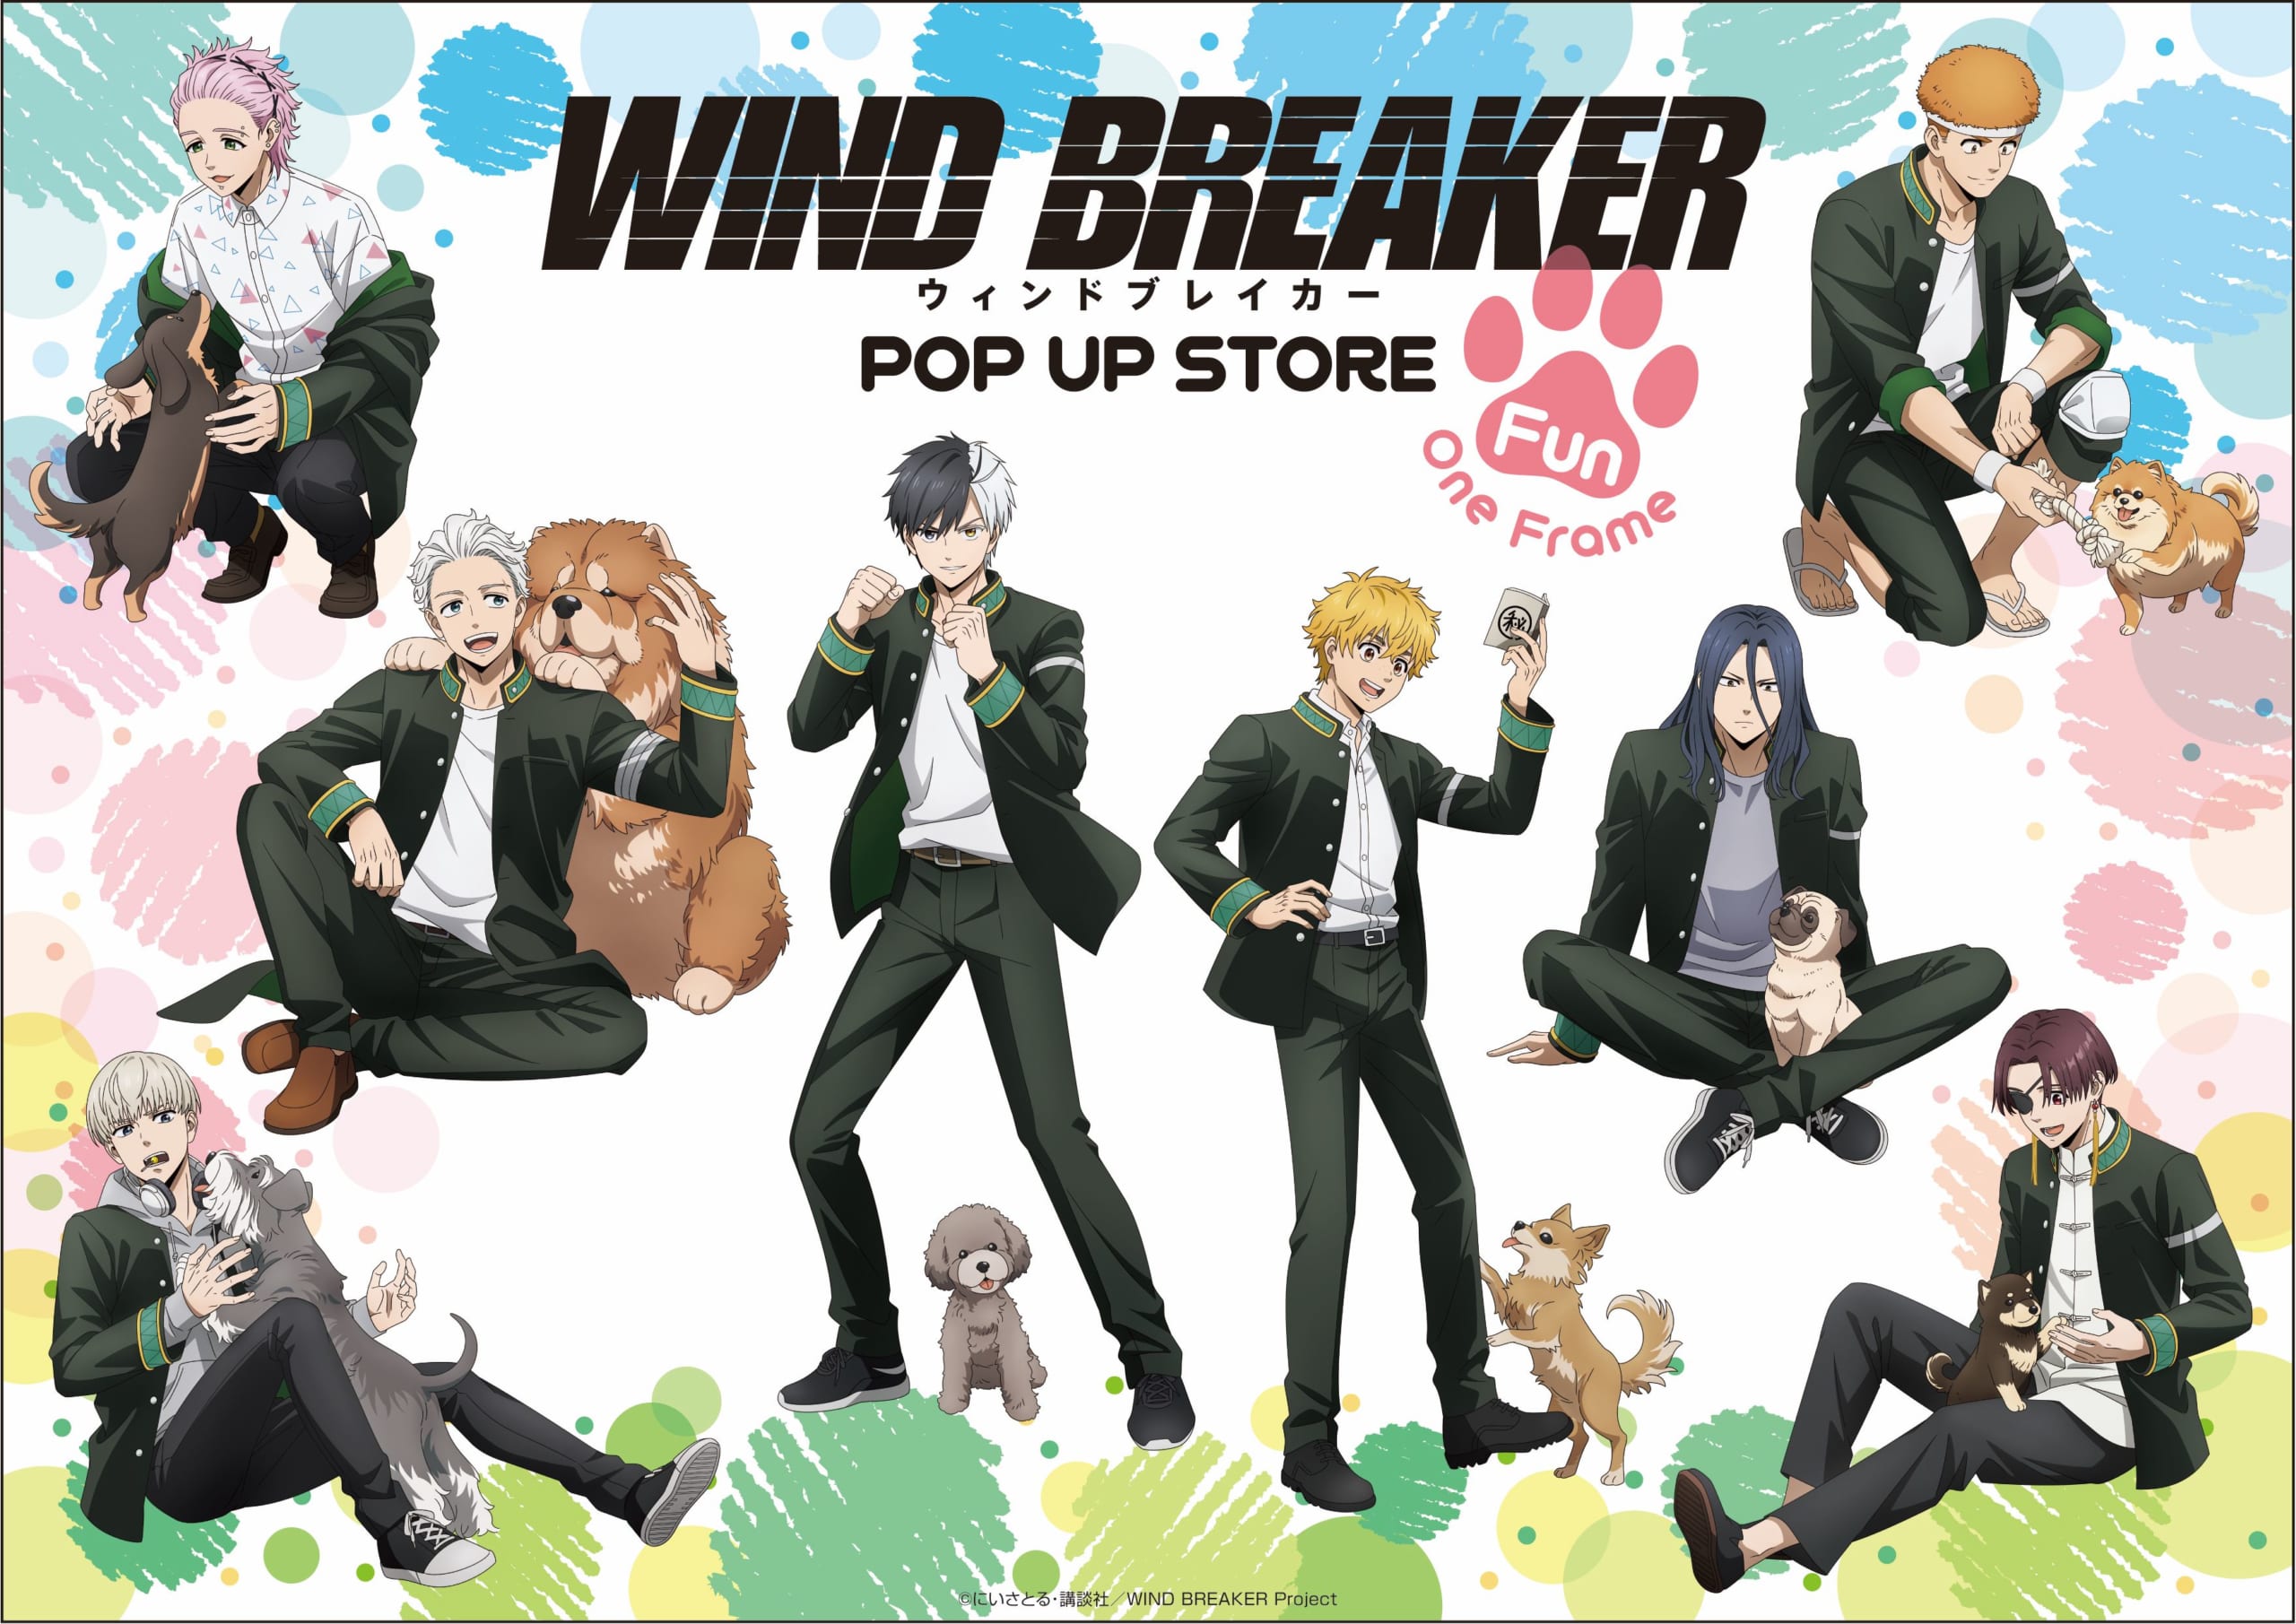 TVアニメ「WIND BREAKER」期間限定POP UP STORE in ロフト